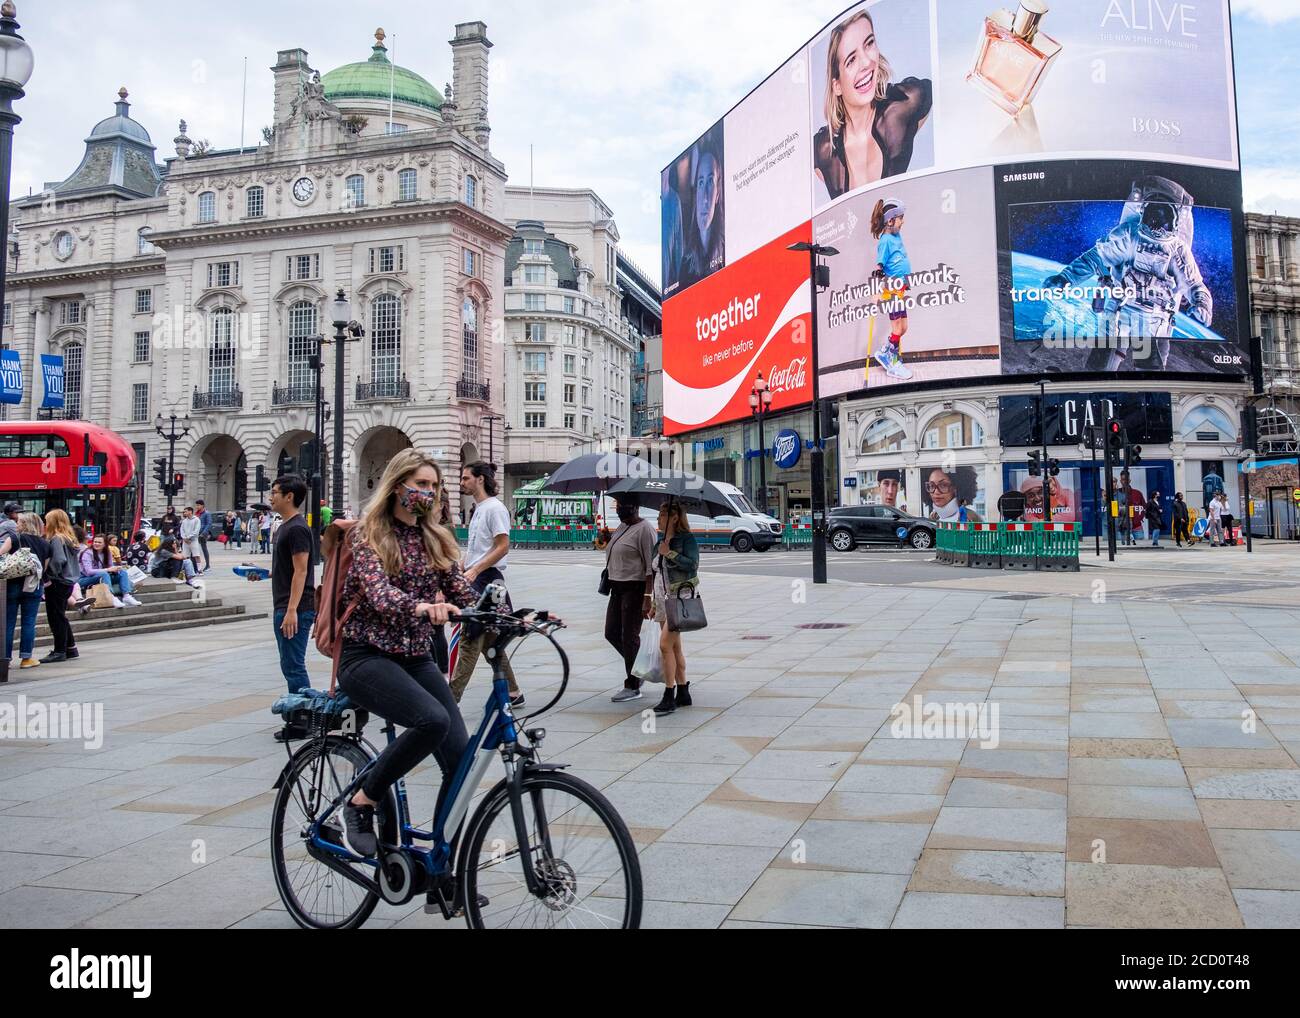 London - August 2020: Ruhige Londoner Straßenszene am Piccadilly Circus, fast leer wegen der Auswirkungen des Coronavirus Stockfoto